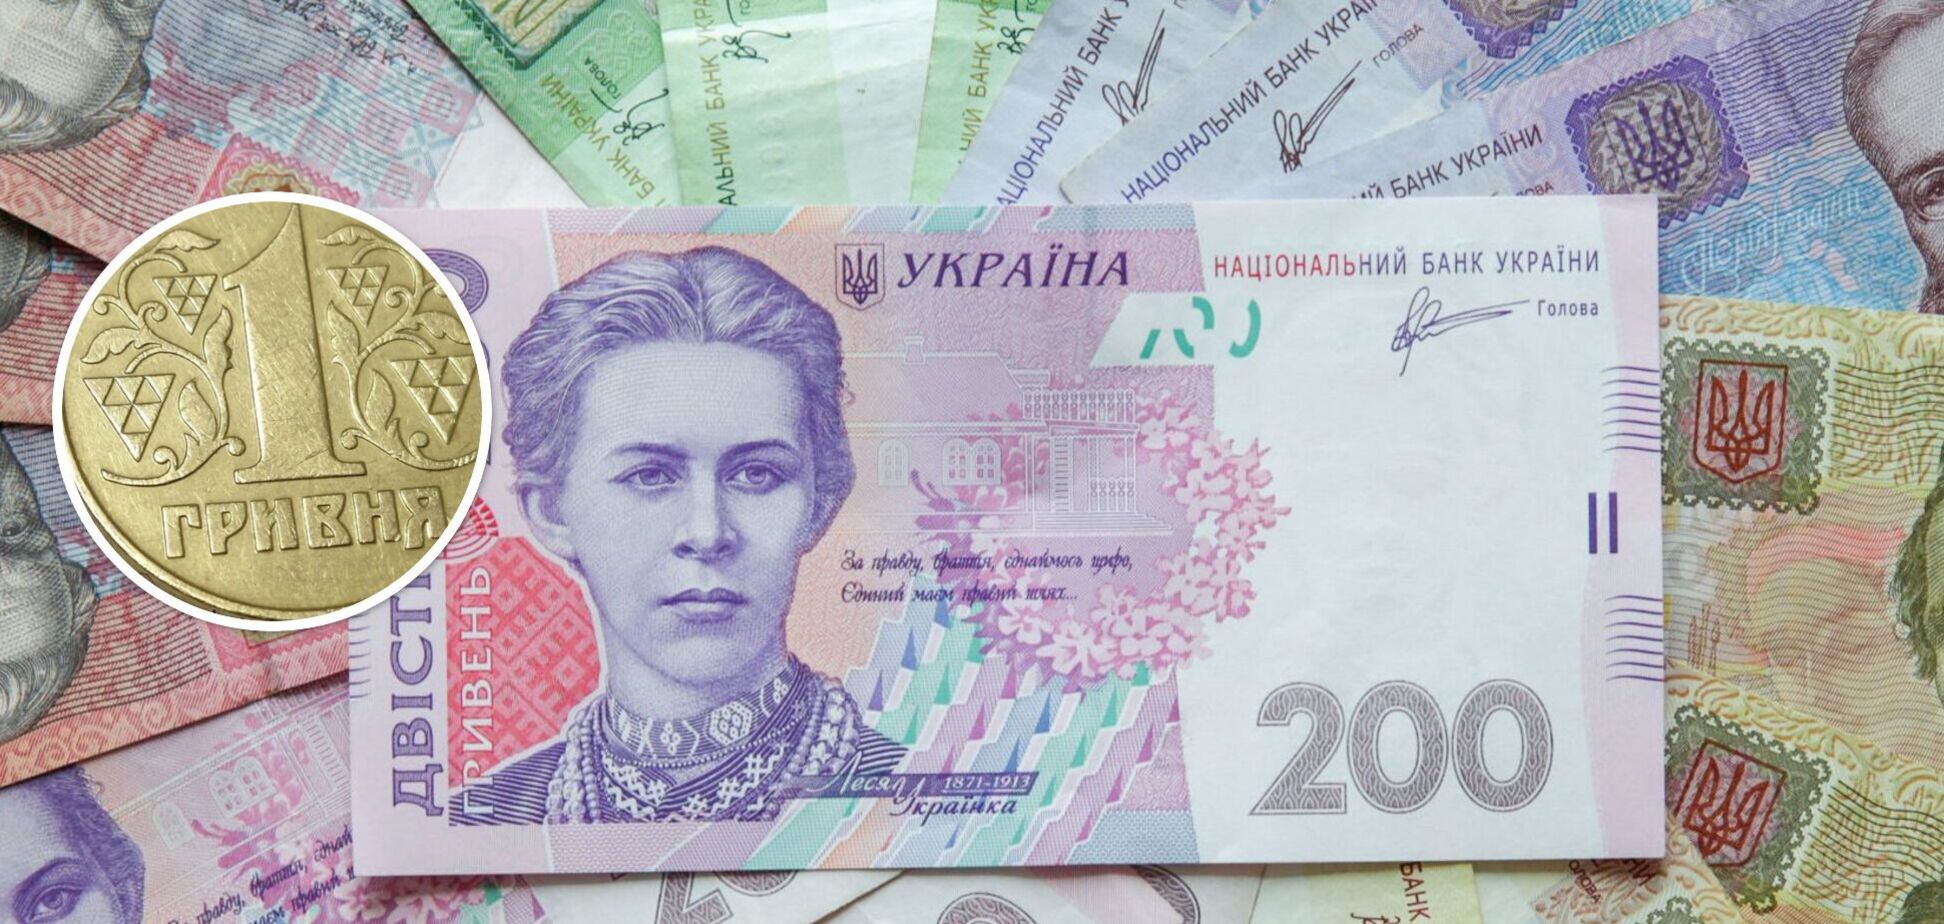 Ціна на українську монету в 1 грн на аукціоні зросла у 12 тис. разів